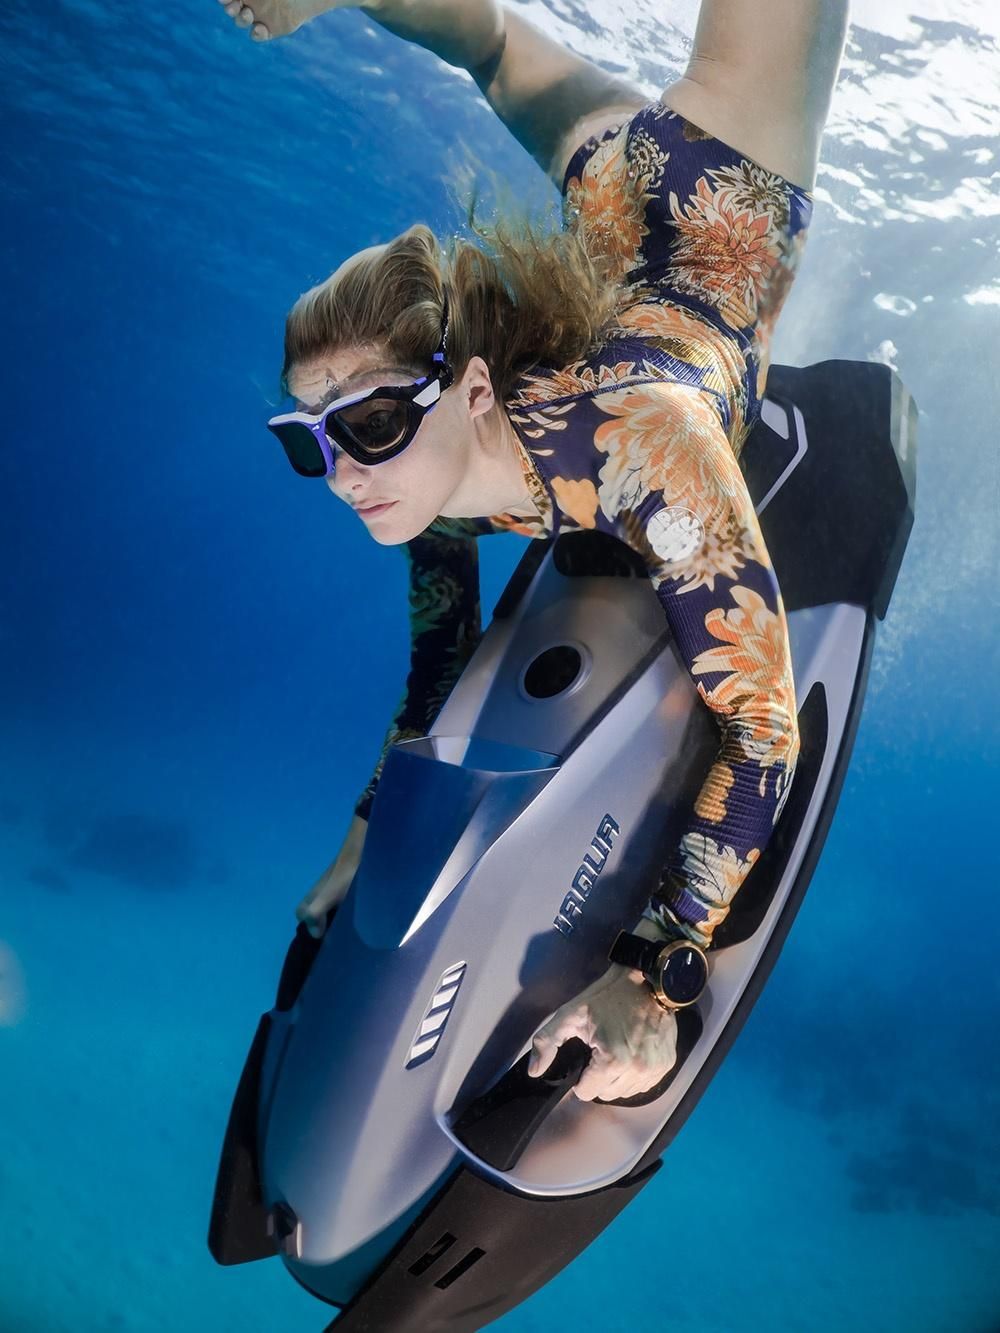 Lady freediving with iAQUA AquaDart sea scooter in Dubai